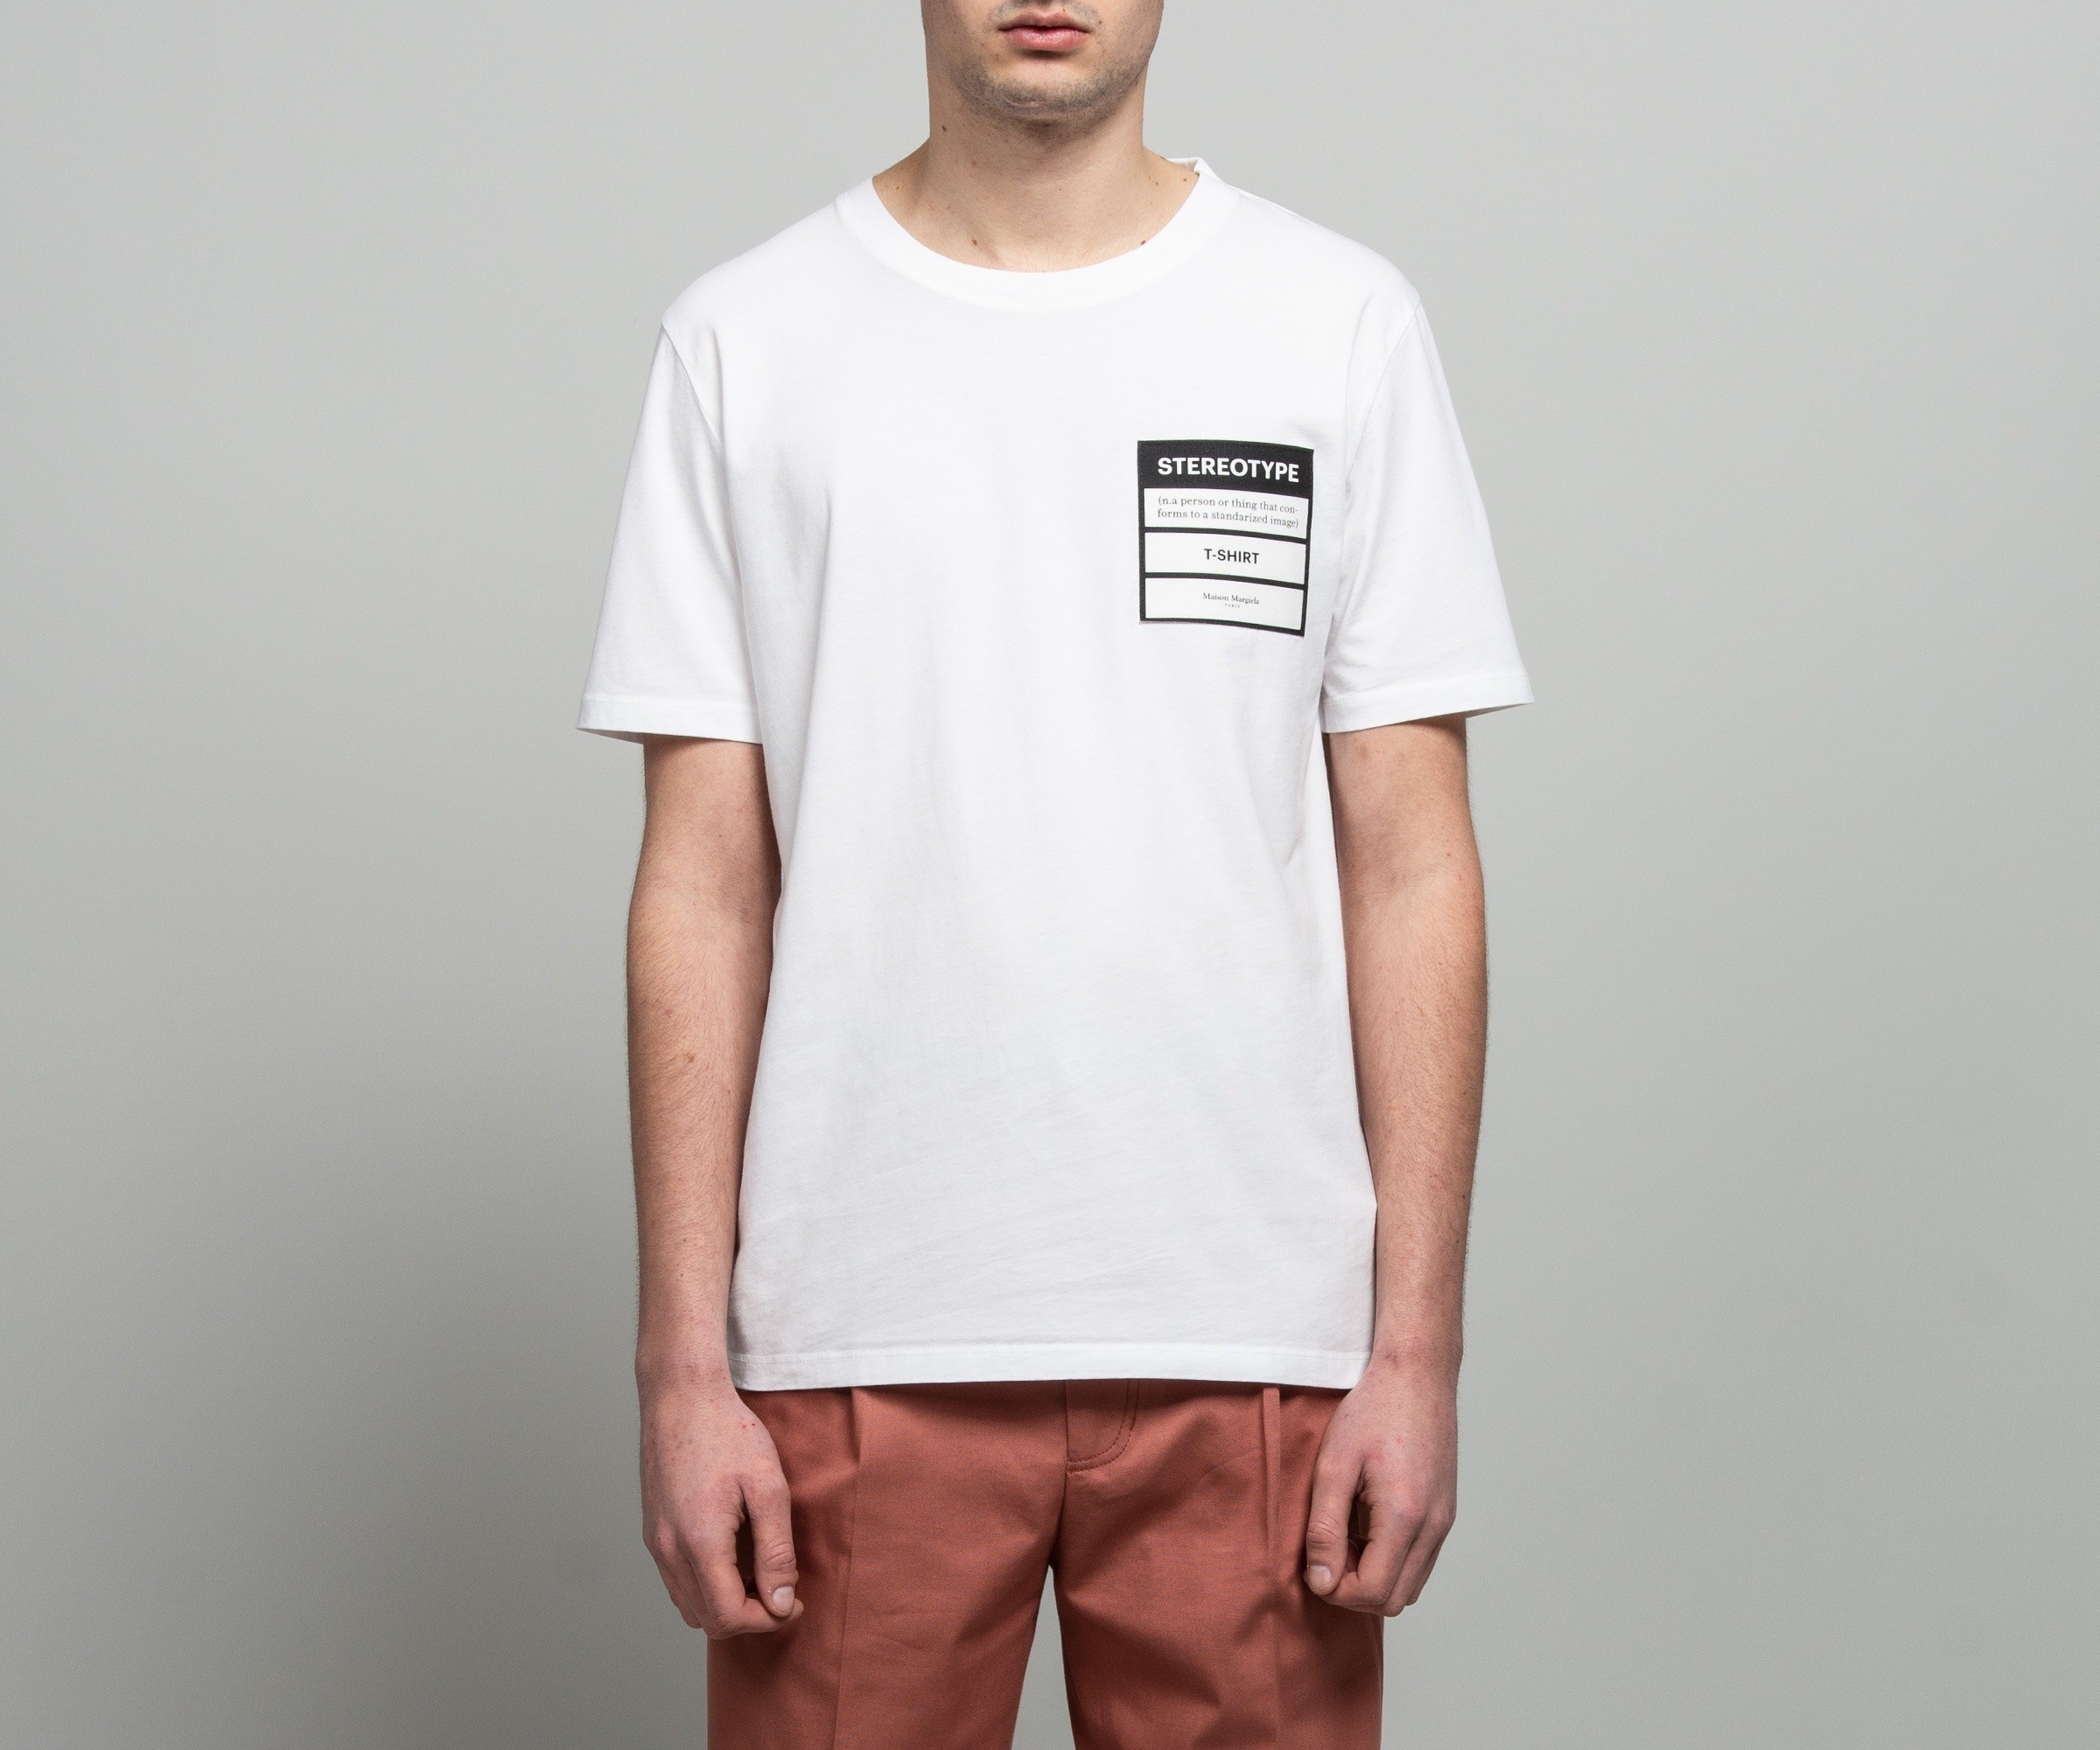 Maison Margiela 'Stereotype' T-Shirt White